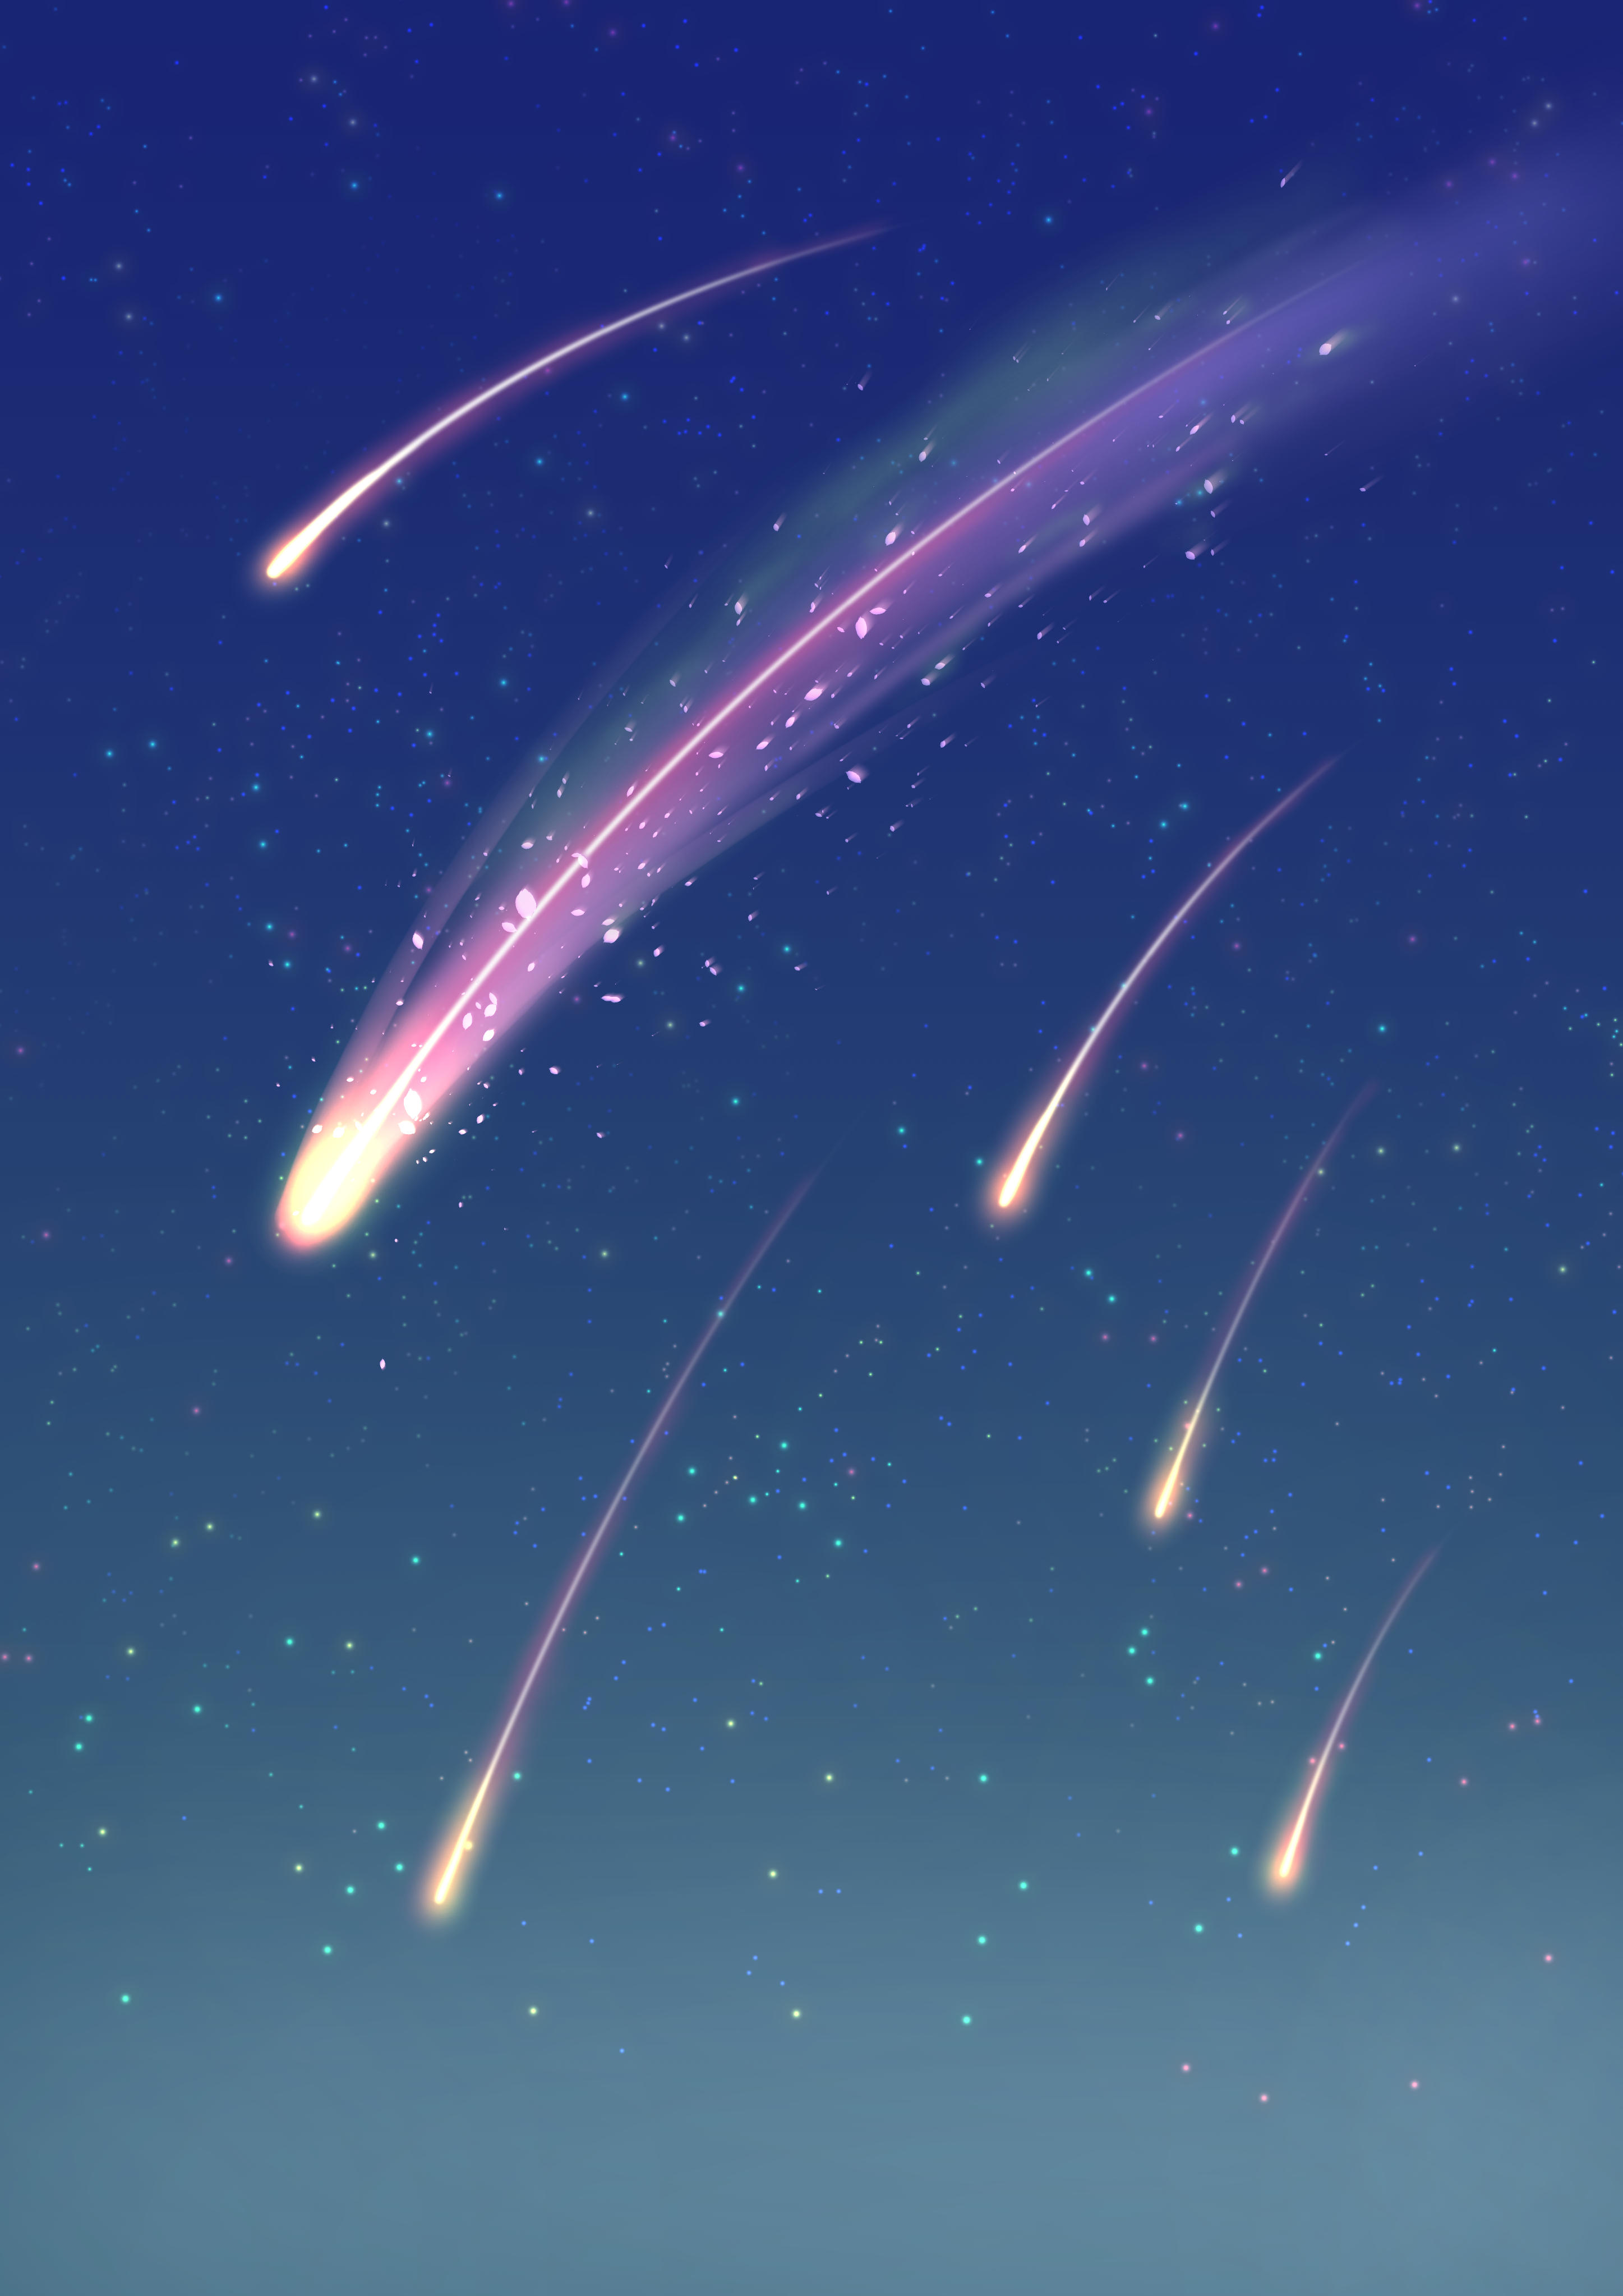 マオ フリー背景を作りました イラスト オリジナル オーロラ 彗星 Illustration 空 夜空 フリー素材 背景 T Co Jogzb2hfo4 Twitter